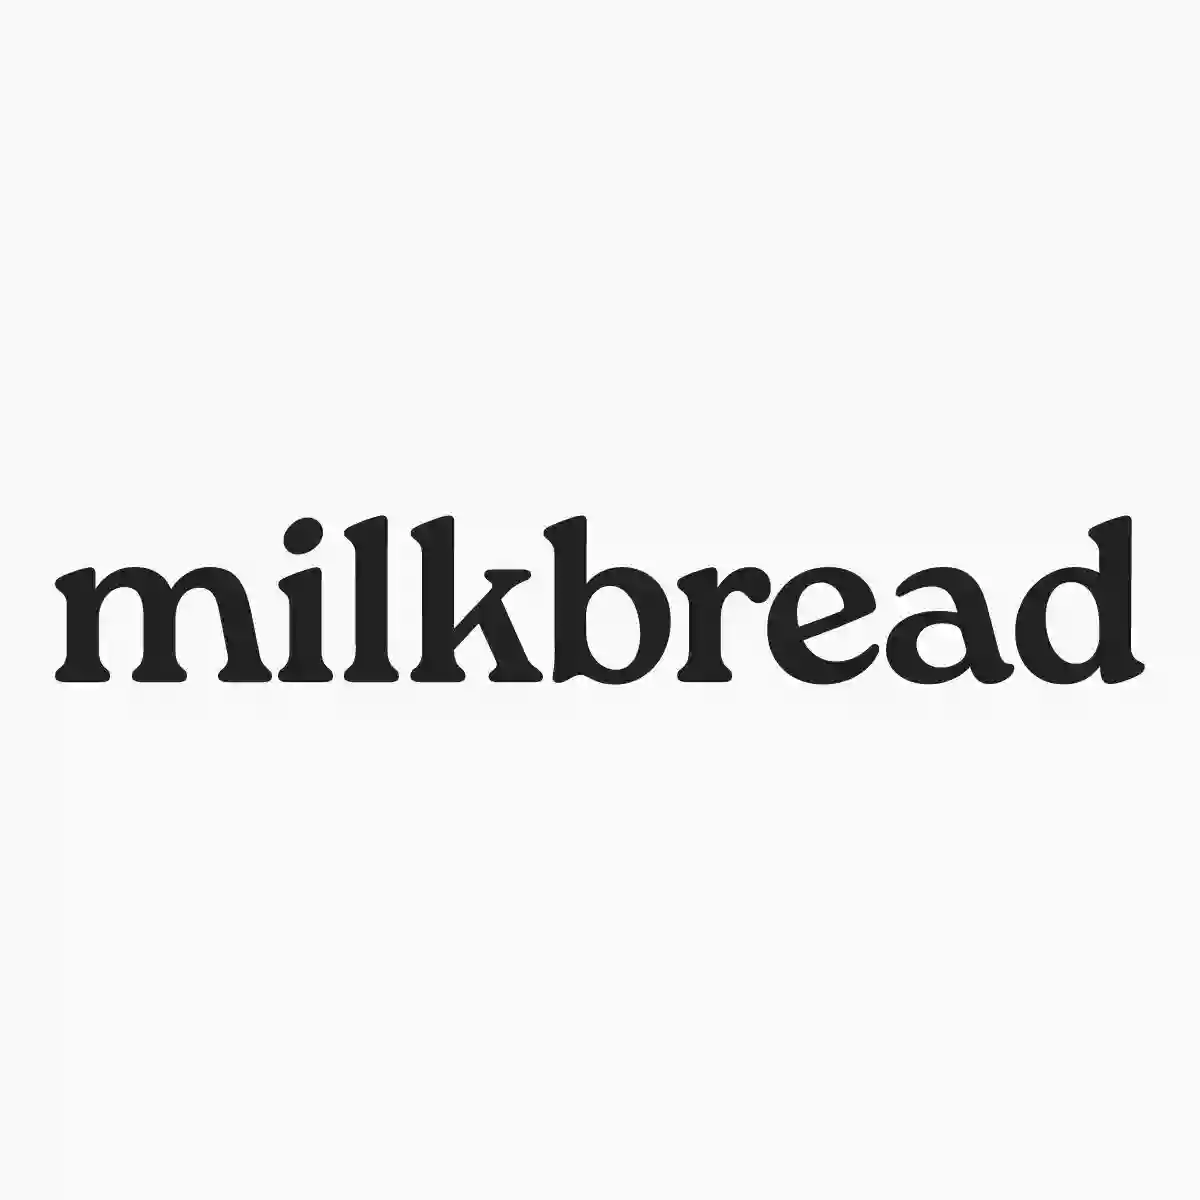 milkbread